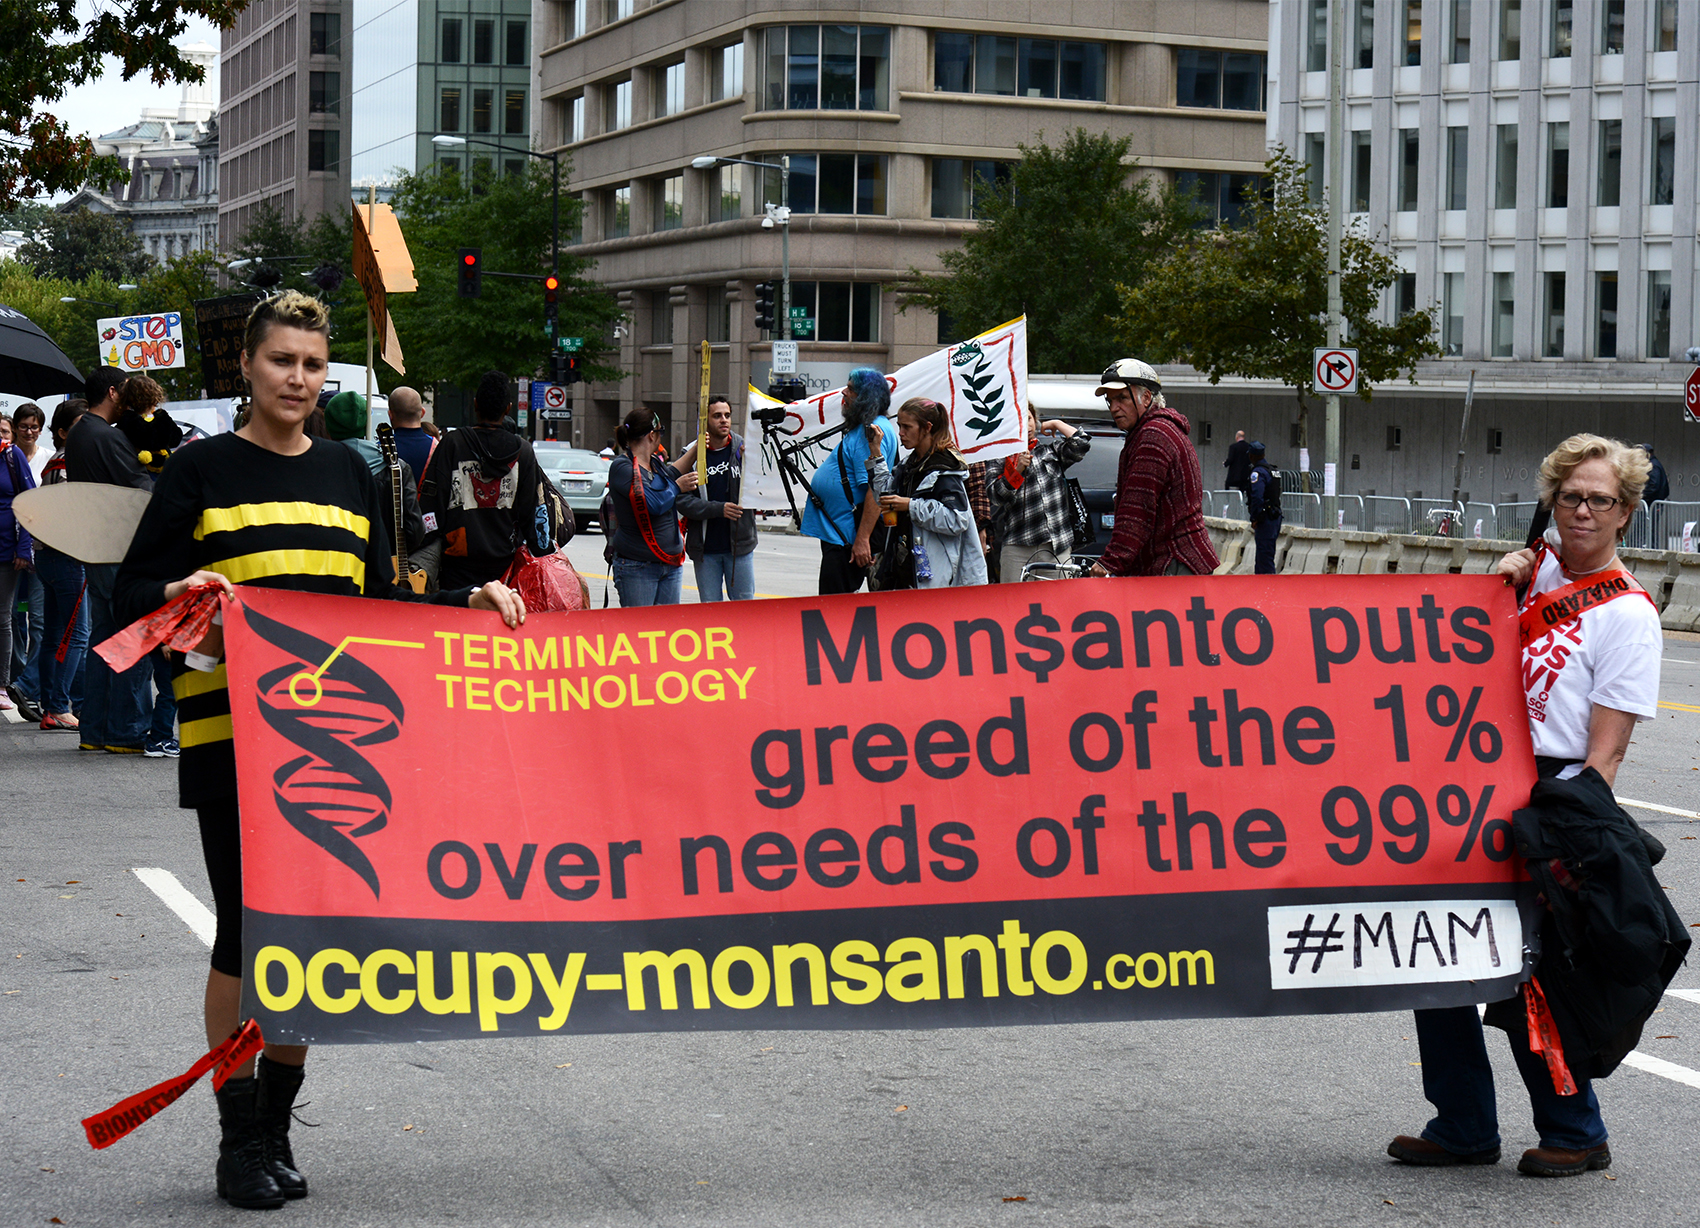 Em outubro, manifestações contra transgênicos ocorreram em 57 países. Em Washington, nos Estados Unidos, cartaz destaca a tecnologia terminator: "A Monsanto coloca a ganância dos 1% sobre as necessidas dos 99%" (Foto: Stephen Melkisethian/Flickr)